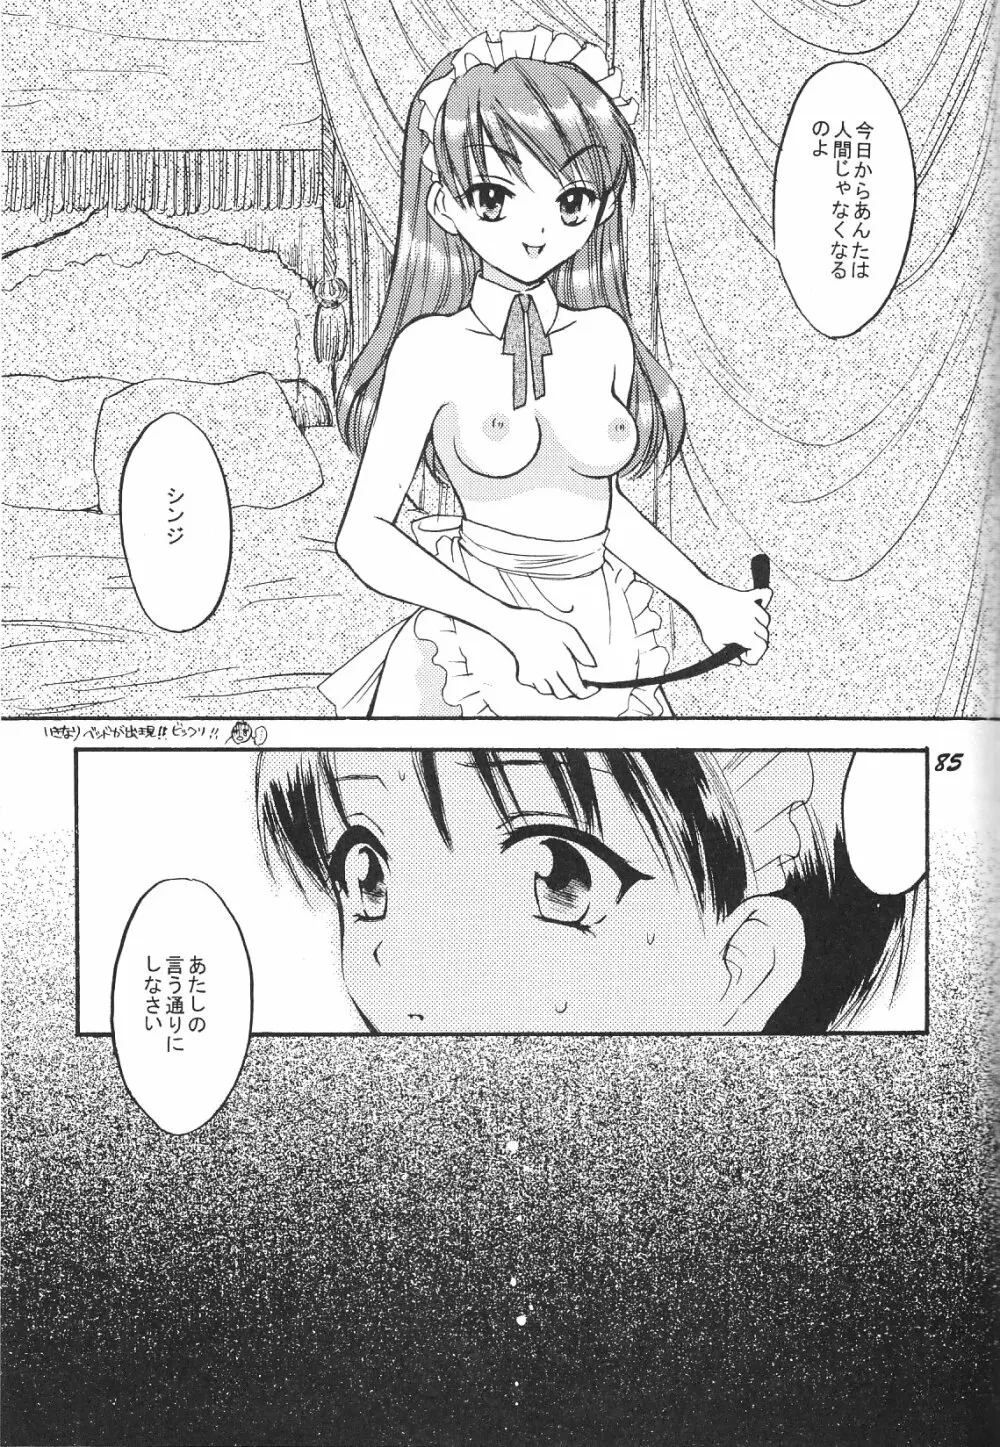 Maniac Juice 女シンジ再録集 '96-'99 - page85